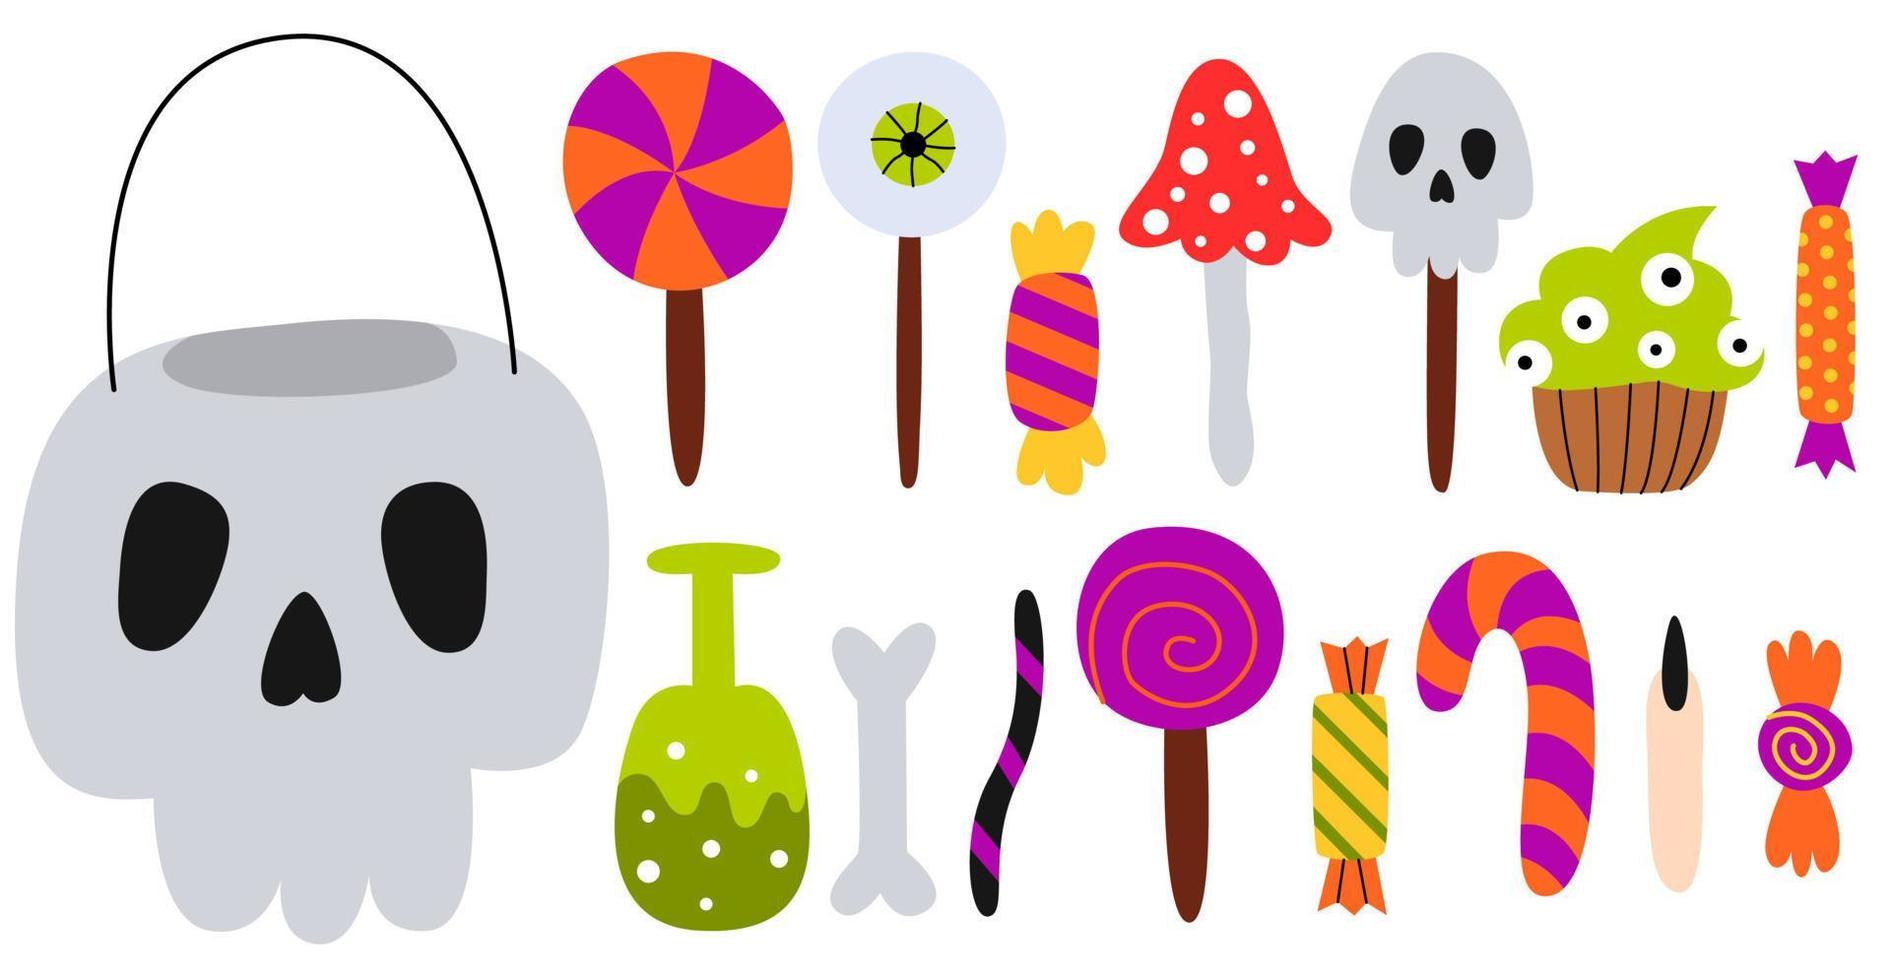 Stellen Sie Halloween-Süßigkeiten und einen Schädelkessel ein. Lutscher, Bonbons, Zuckerrohr und Kekse. Süßes oder Saures Elemente. Vektor-Cartoon-Illustration. vektor